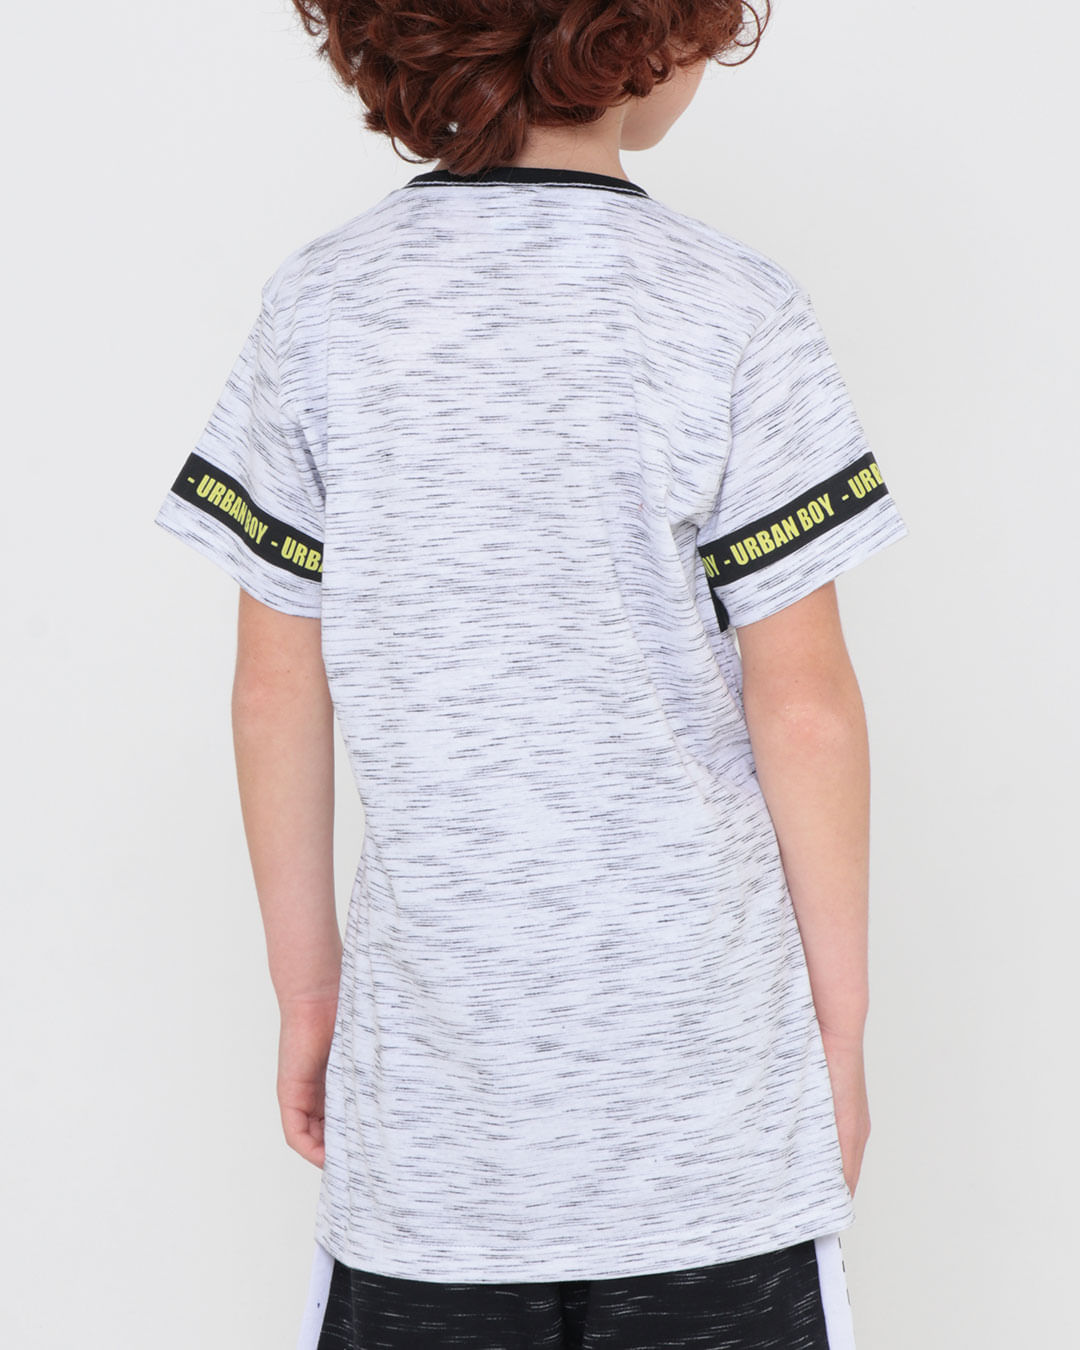 Camiseta-Infantil-Flame-Estampa-Urban-Boy-Branca